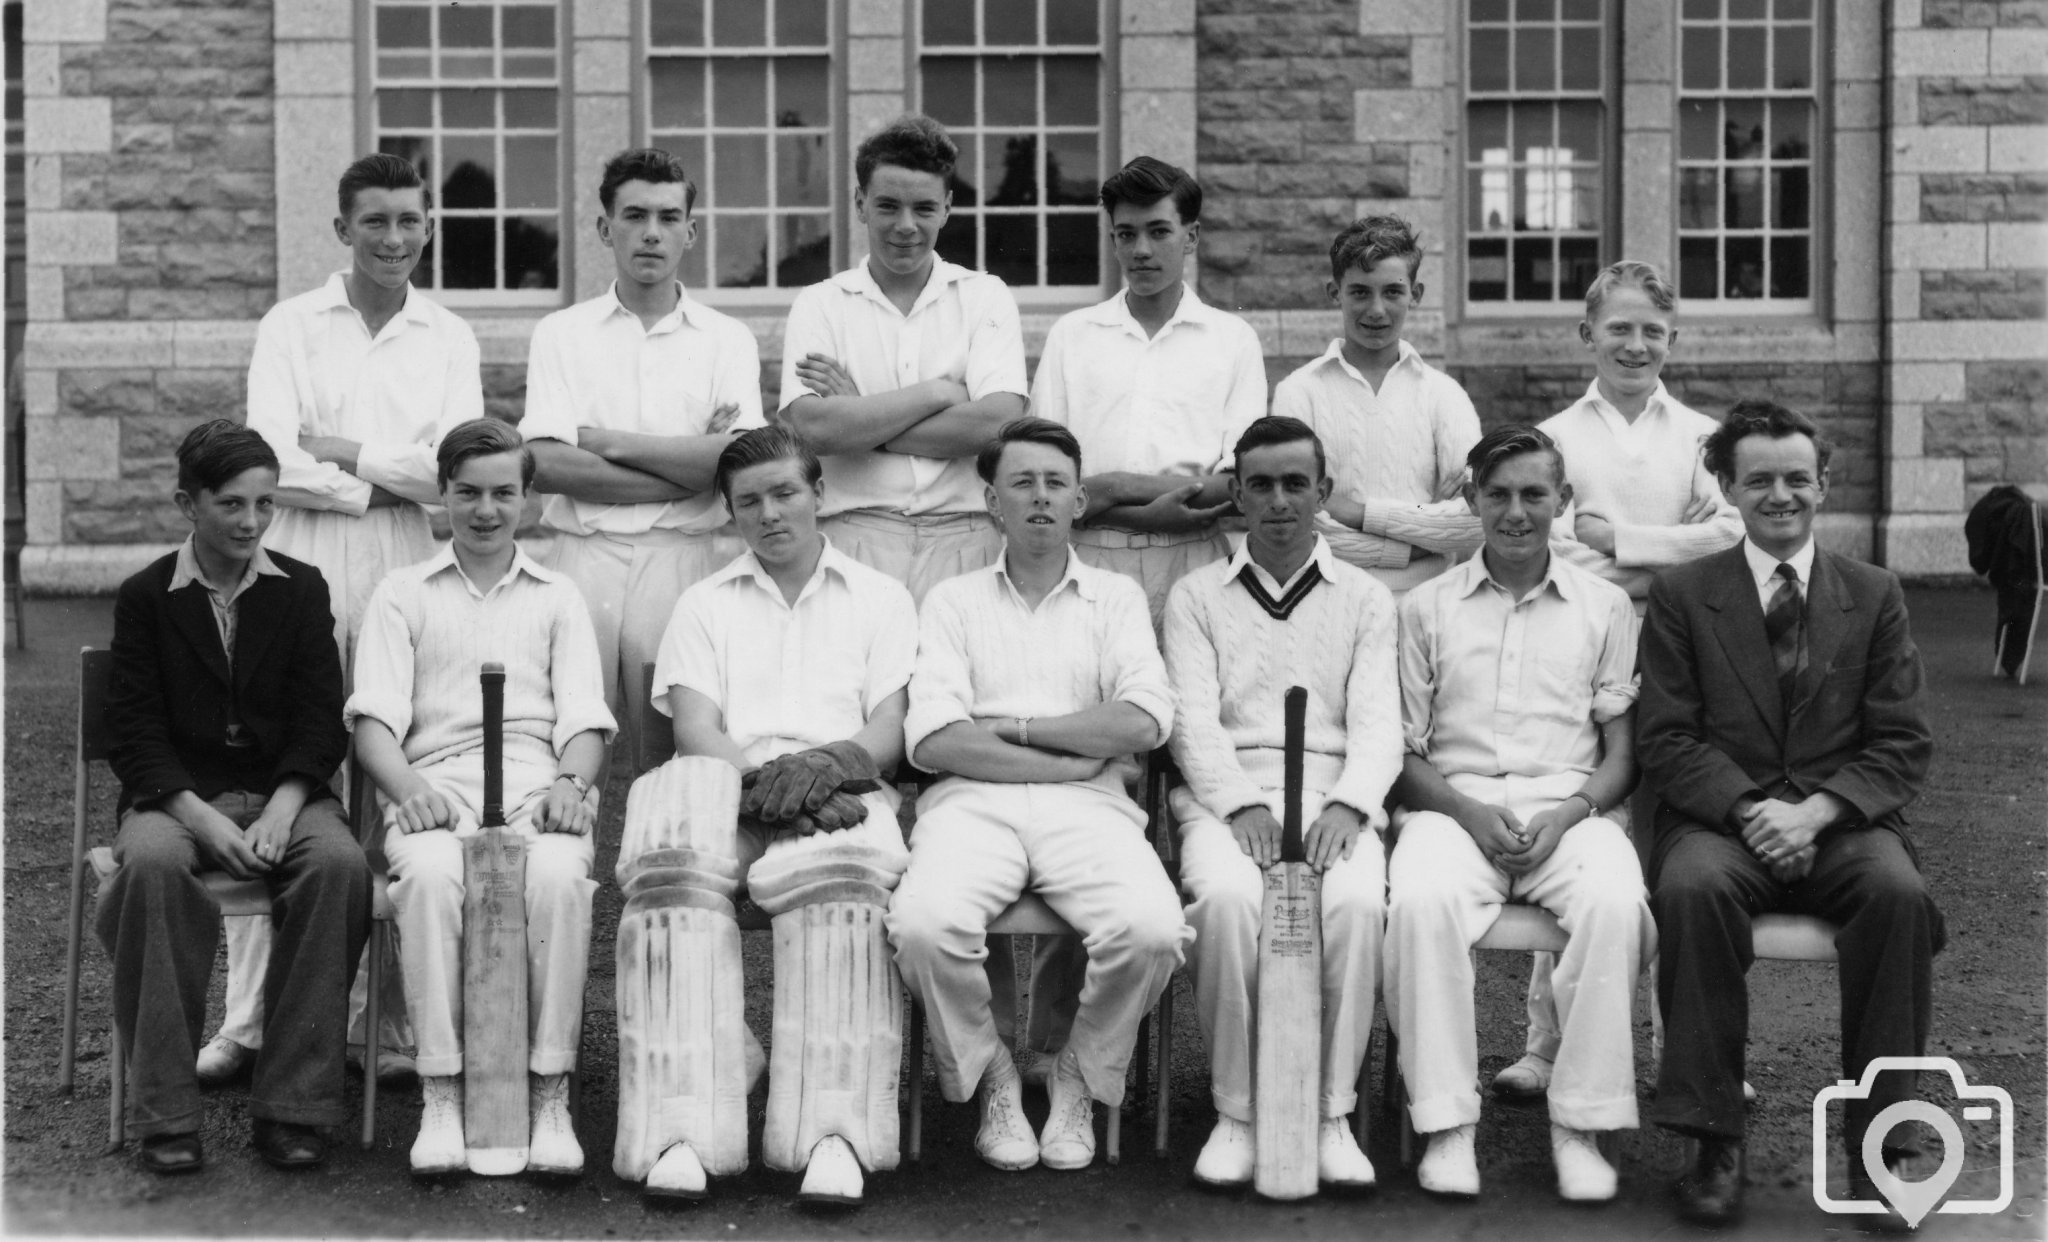 Cricket 2nd Team 1956